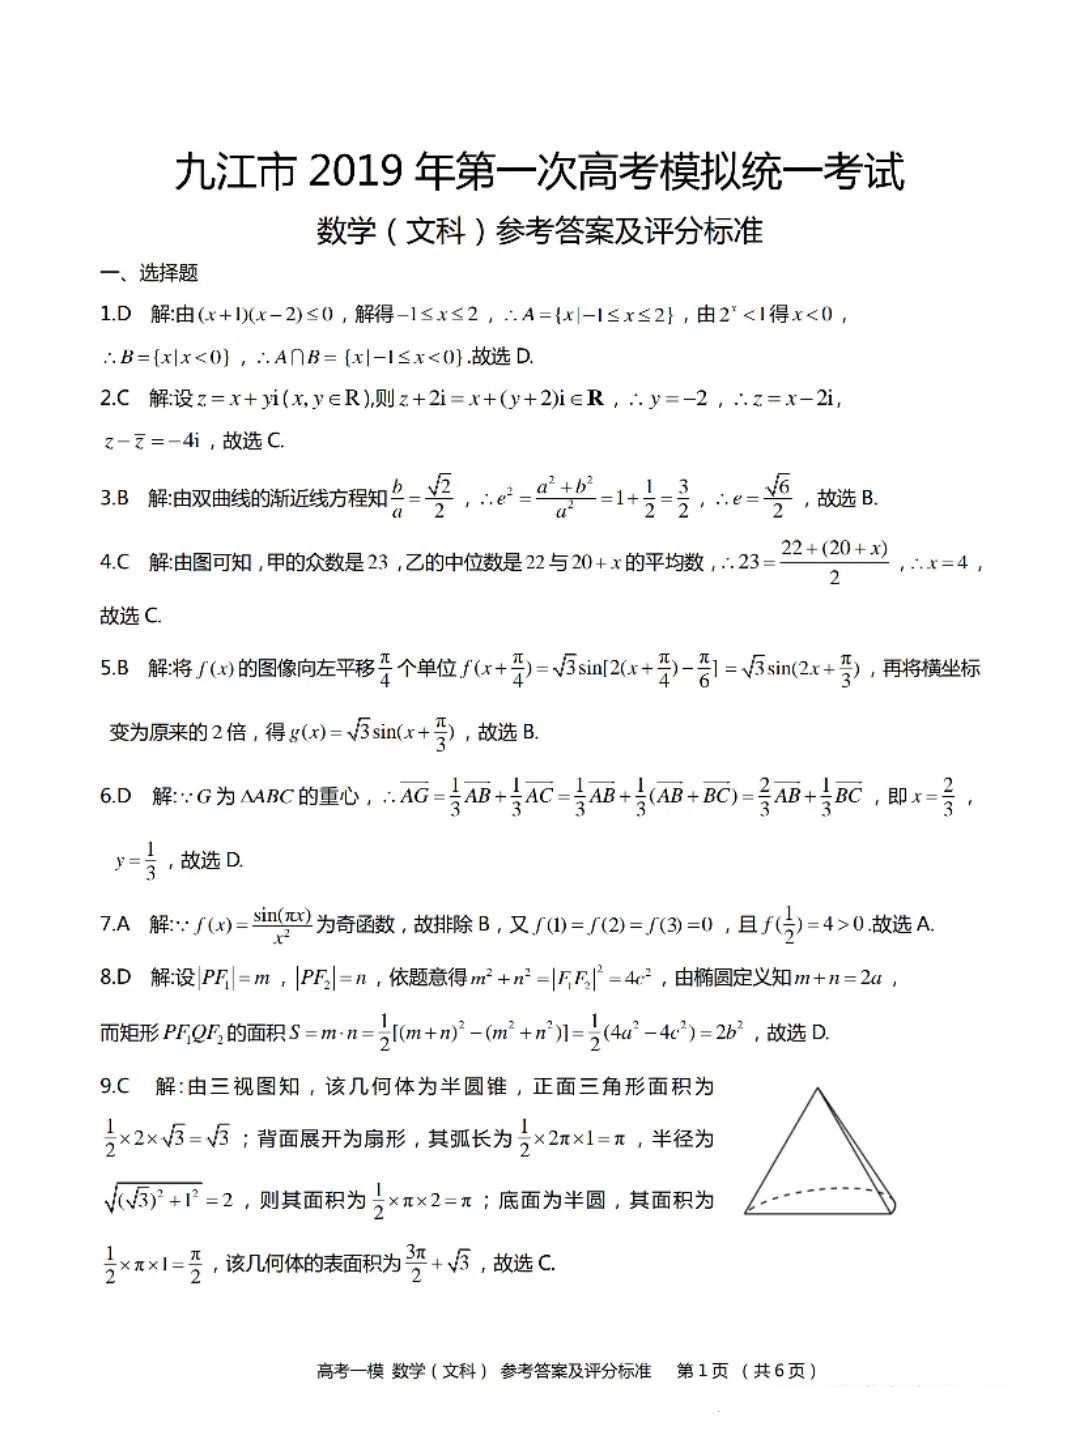 2019届九江市高三一模考试文科数学参考答案及评分标准!